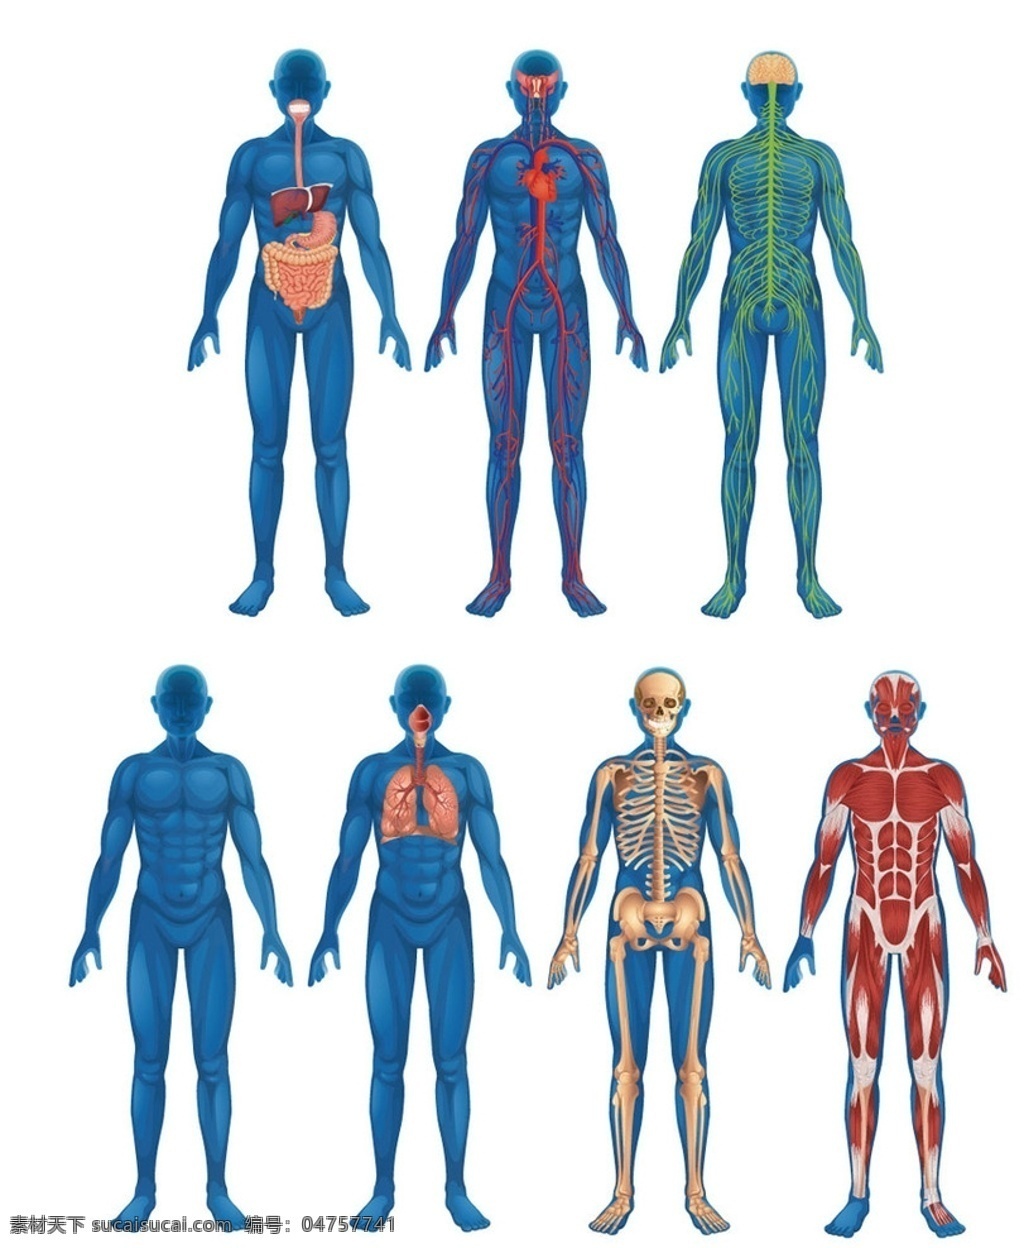 人体器官 人体结构图 骨骼 肌肉 血管 神经 人体解剖 医疗卫生 医学 人体 骨架 解剖学 人体组织 生活百科 医疗保健